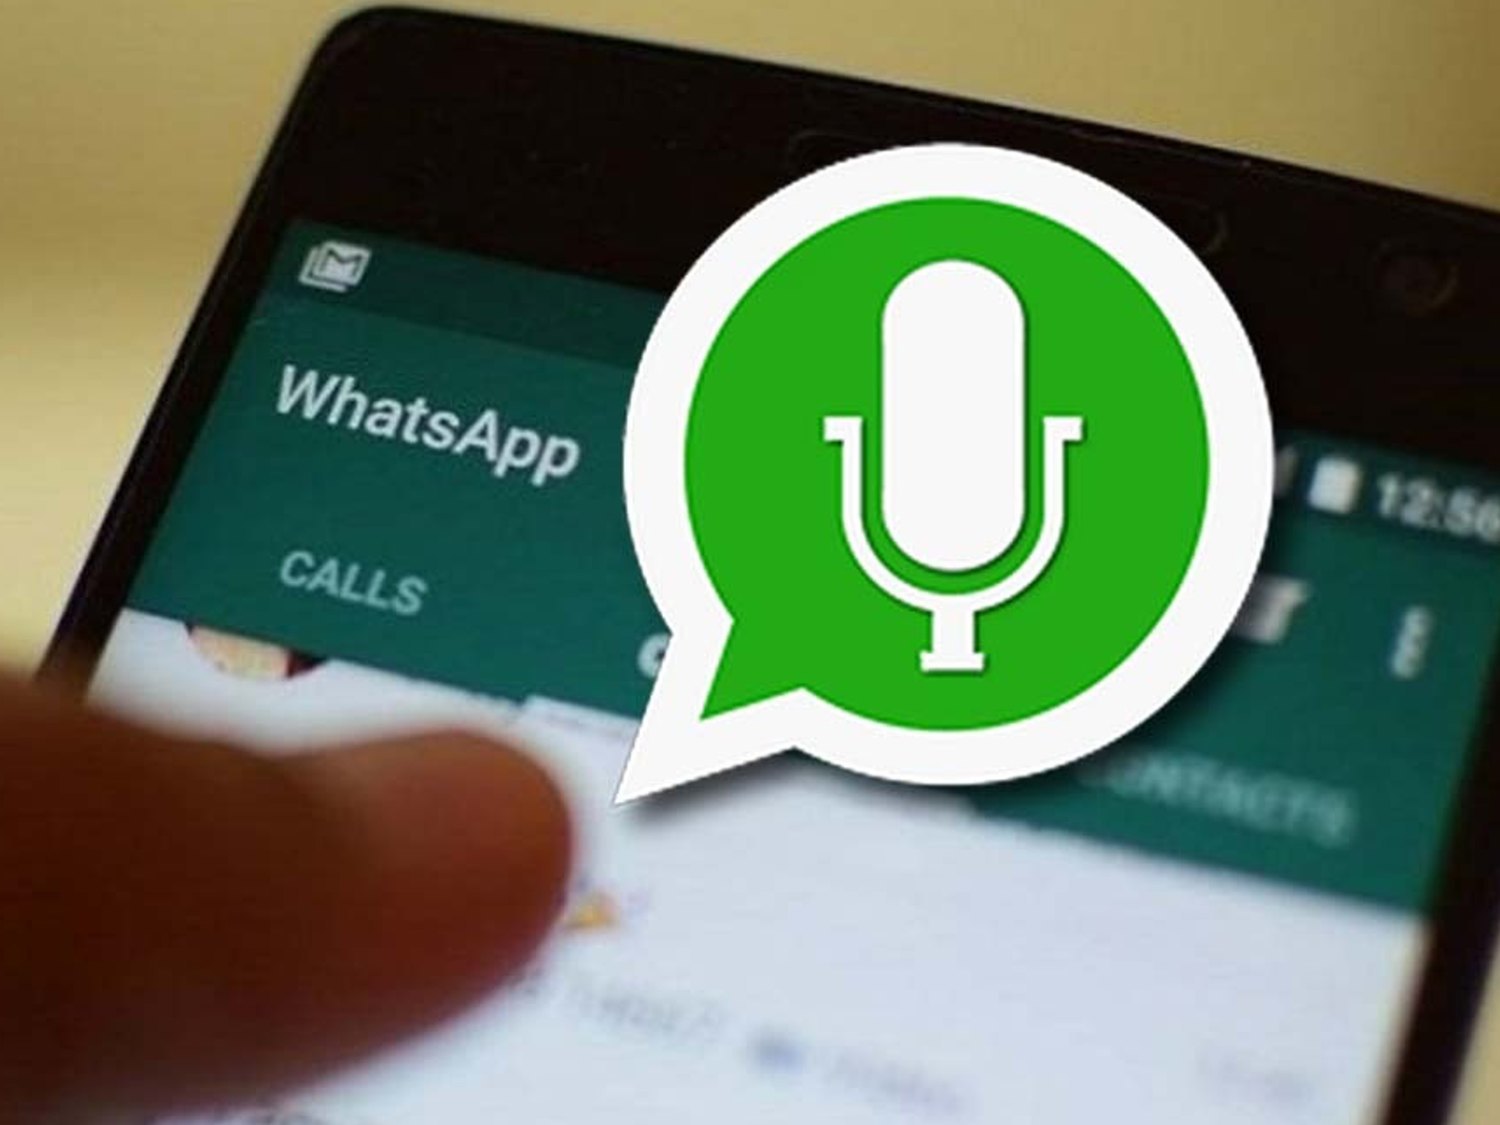 El truco para enviar audios de WhatsApp con voz de robot, ardilla o marciano